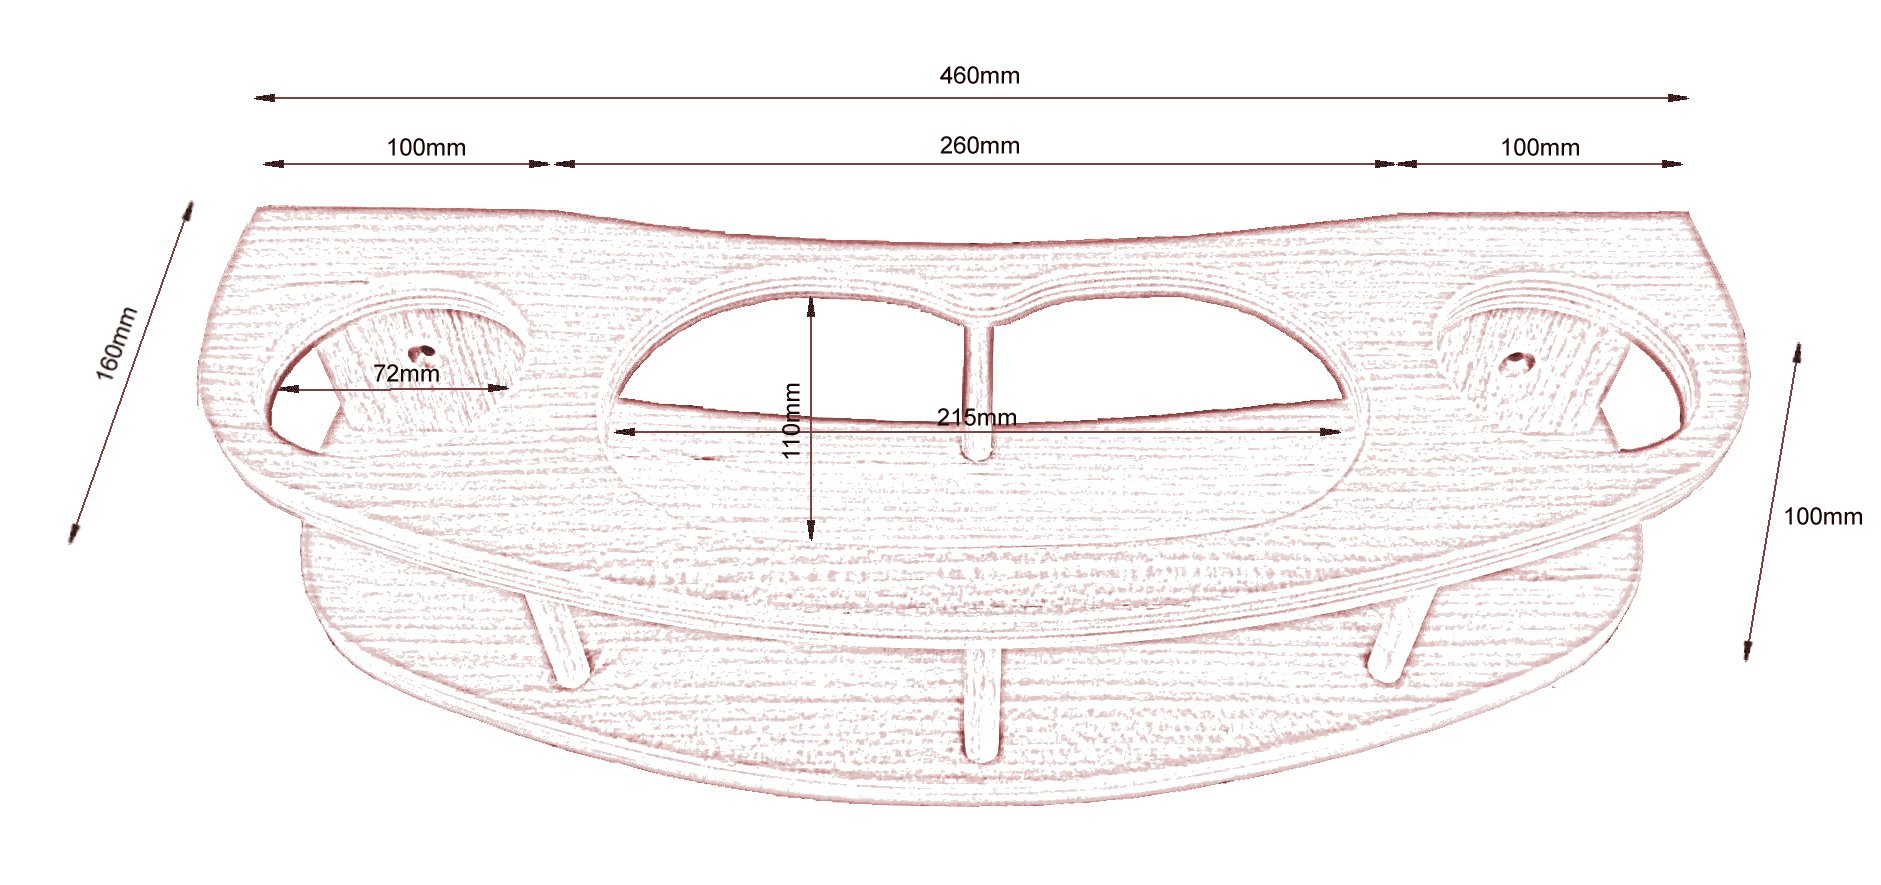 Sketch with measurements for beverage/binocular holder